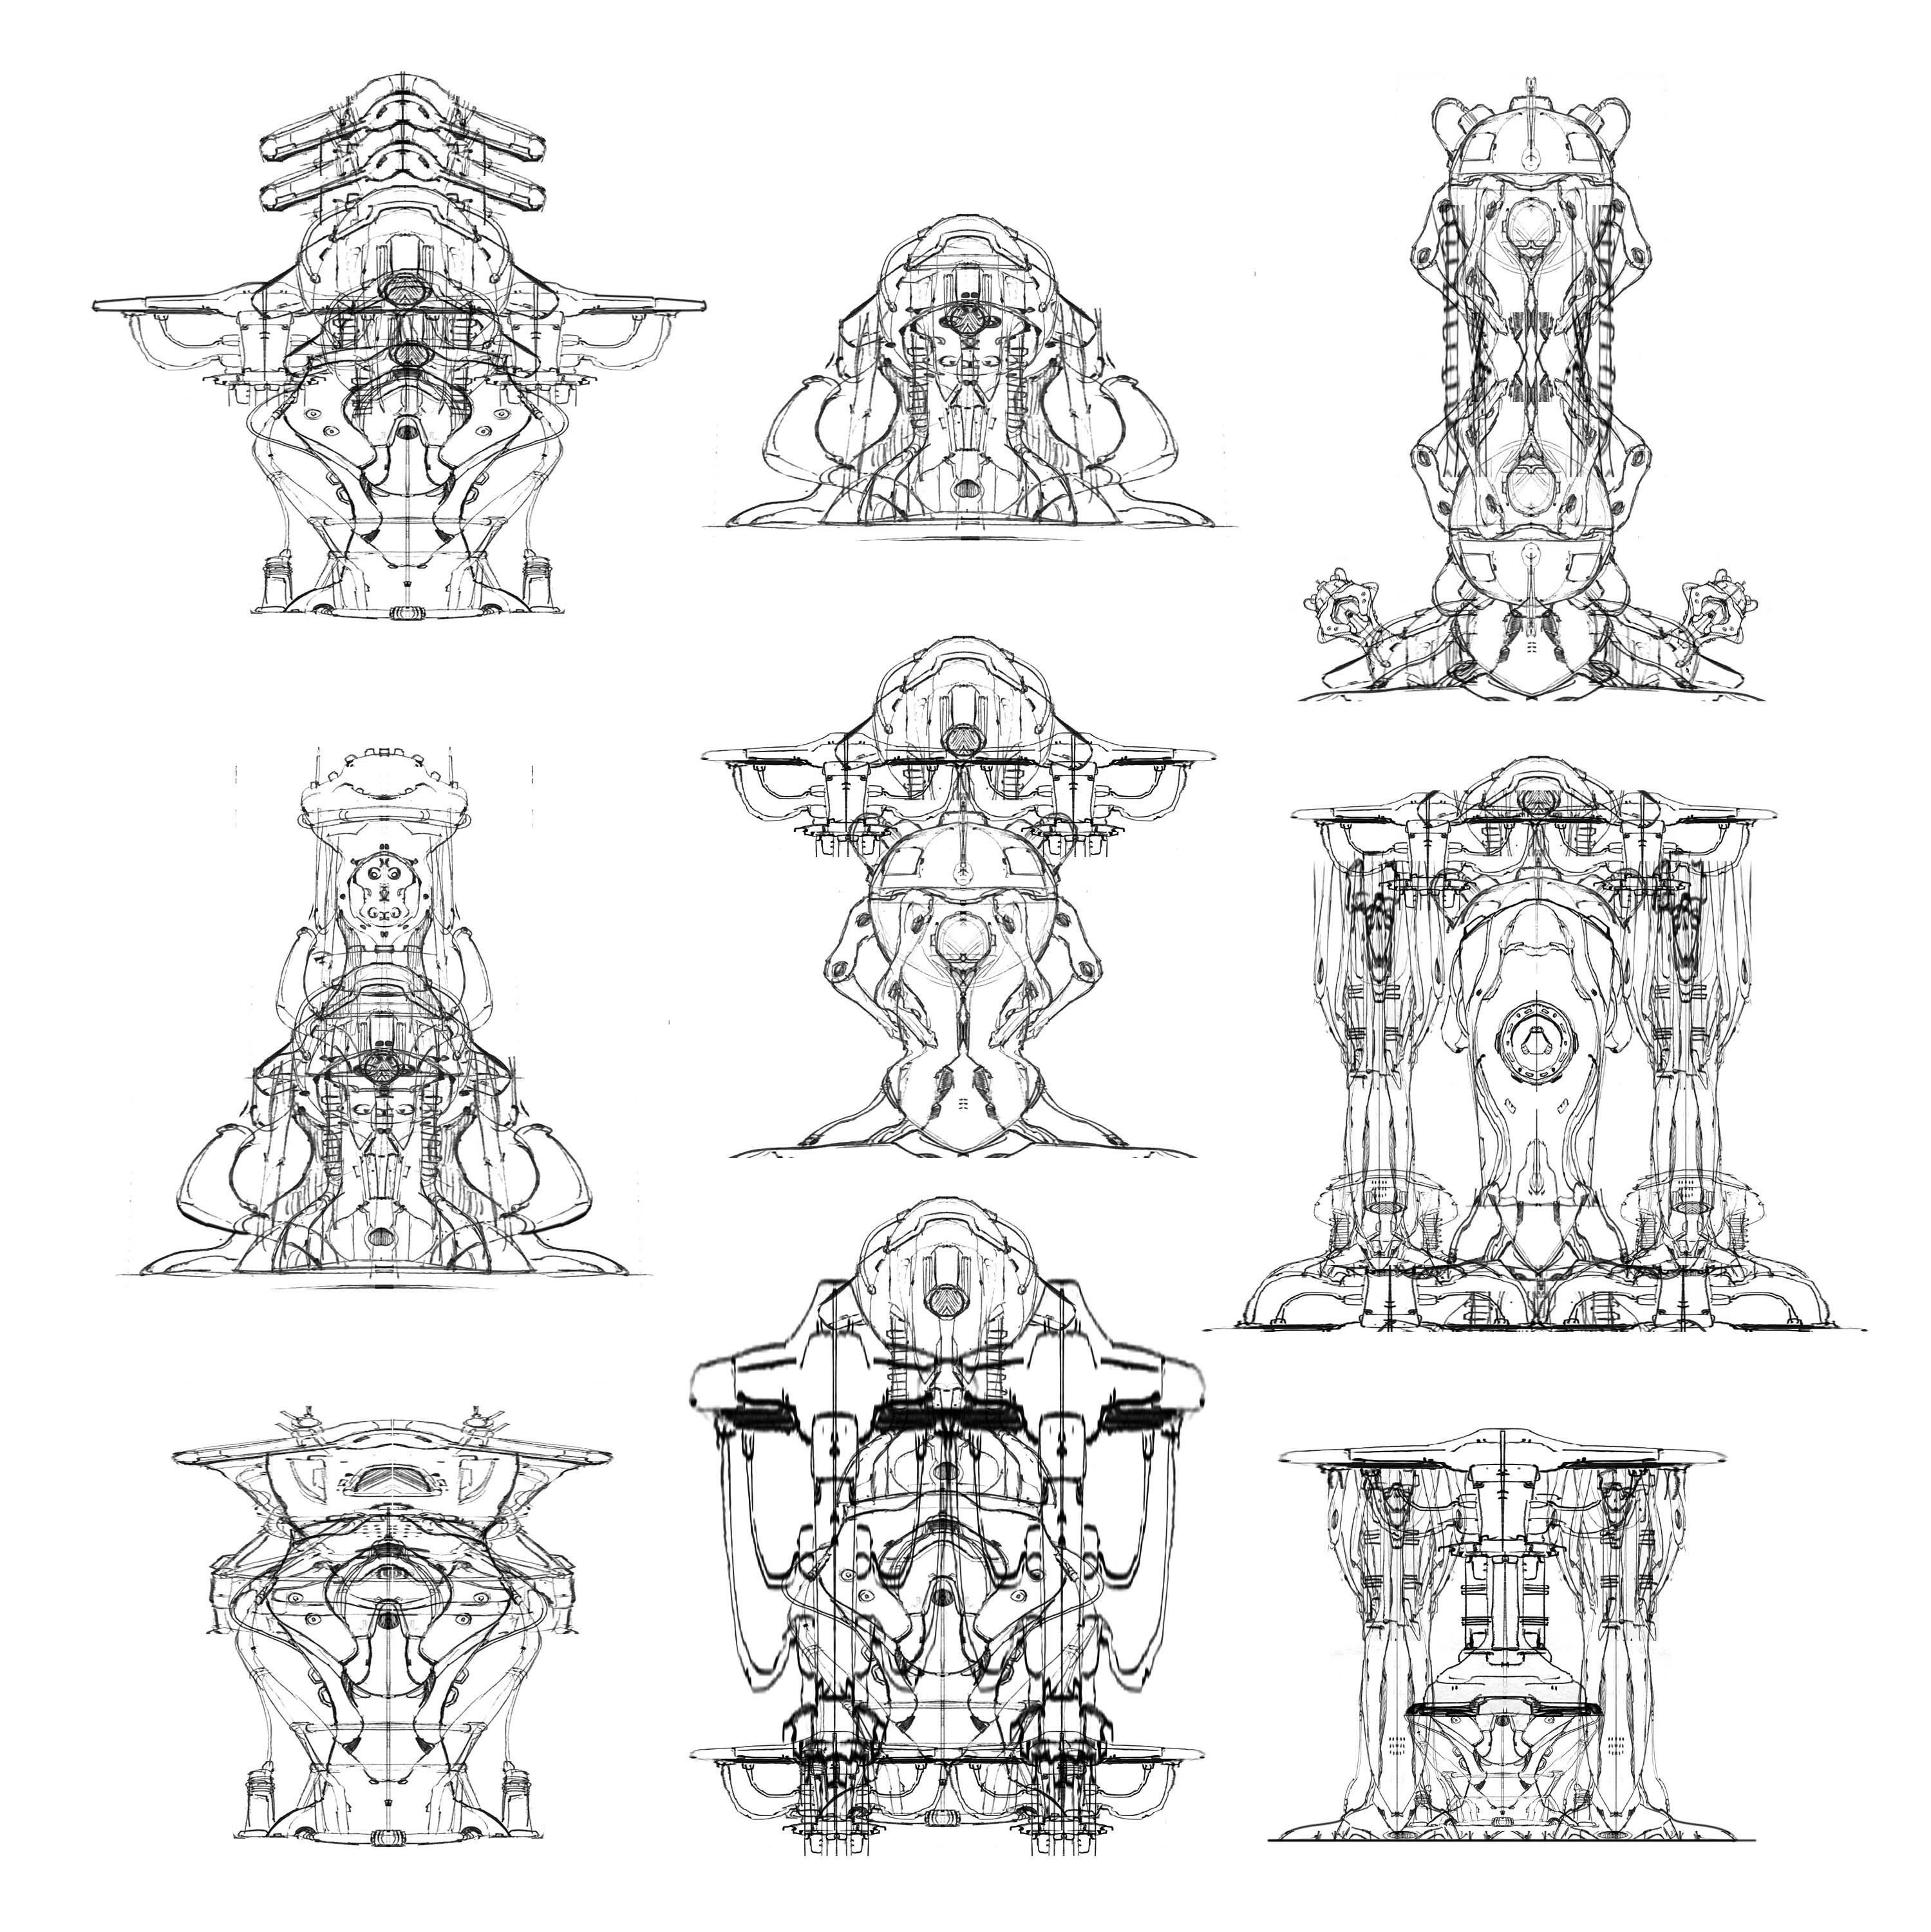 Original form sketches